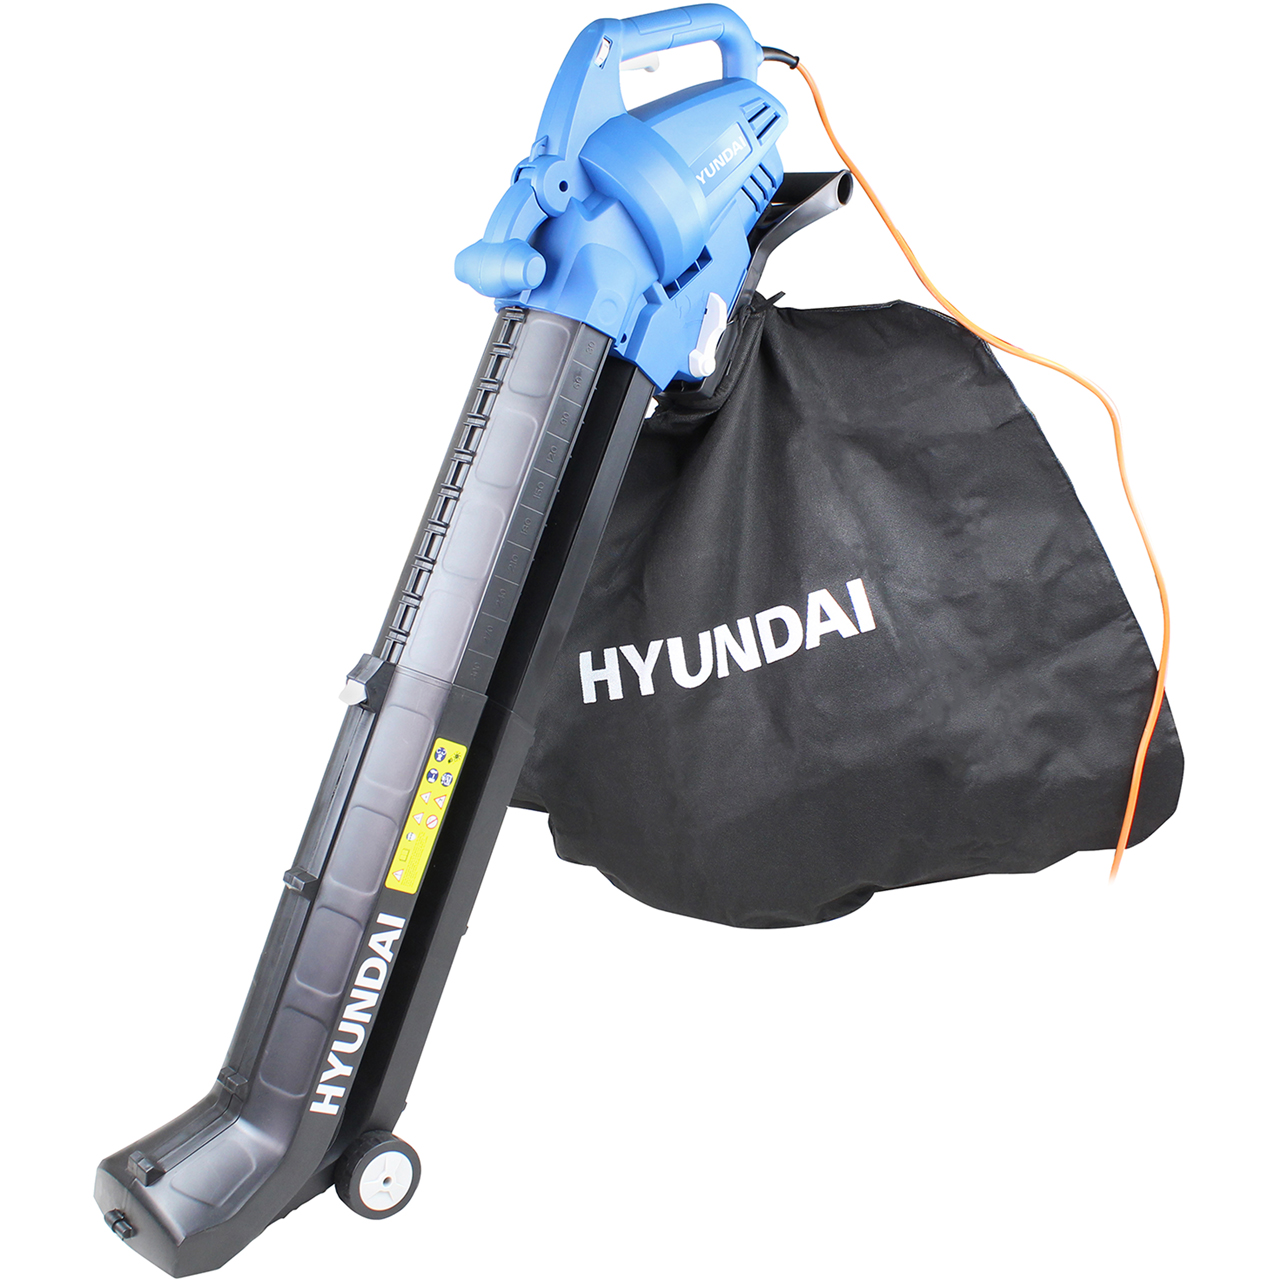 Hyundai HYBV3000E Leaf Vacuum Review